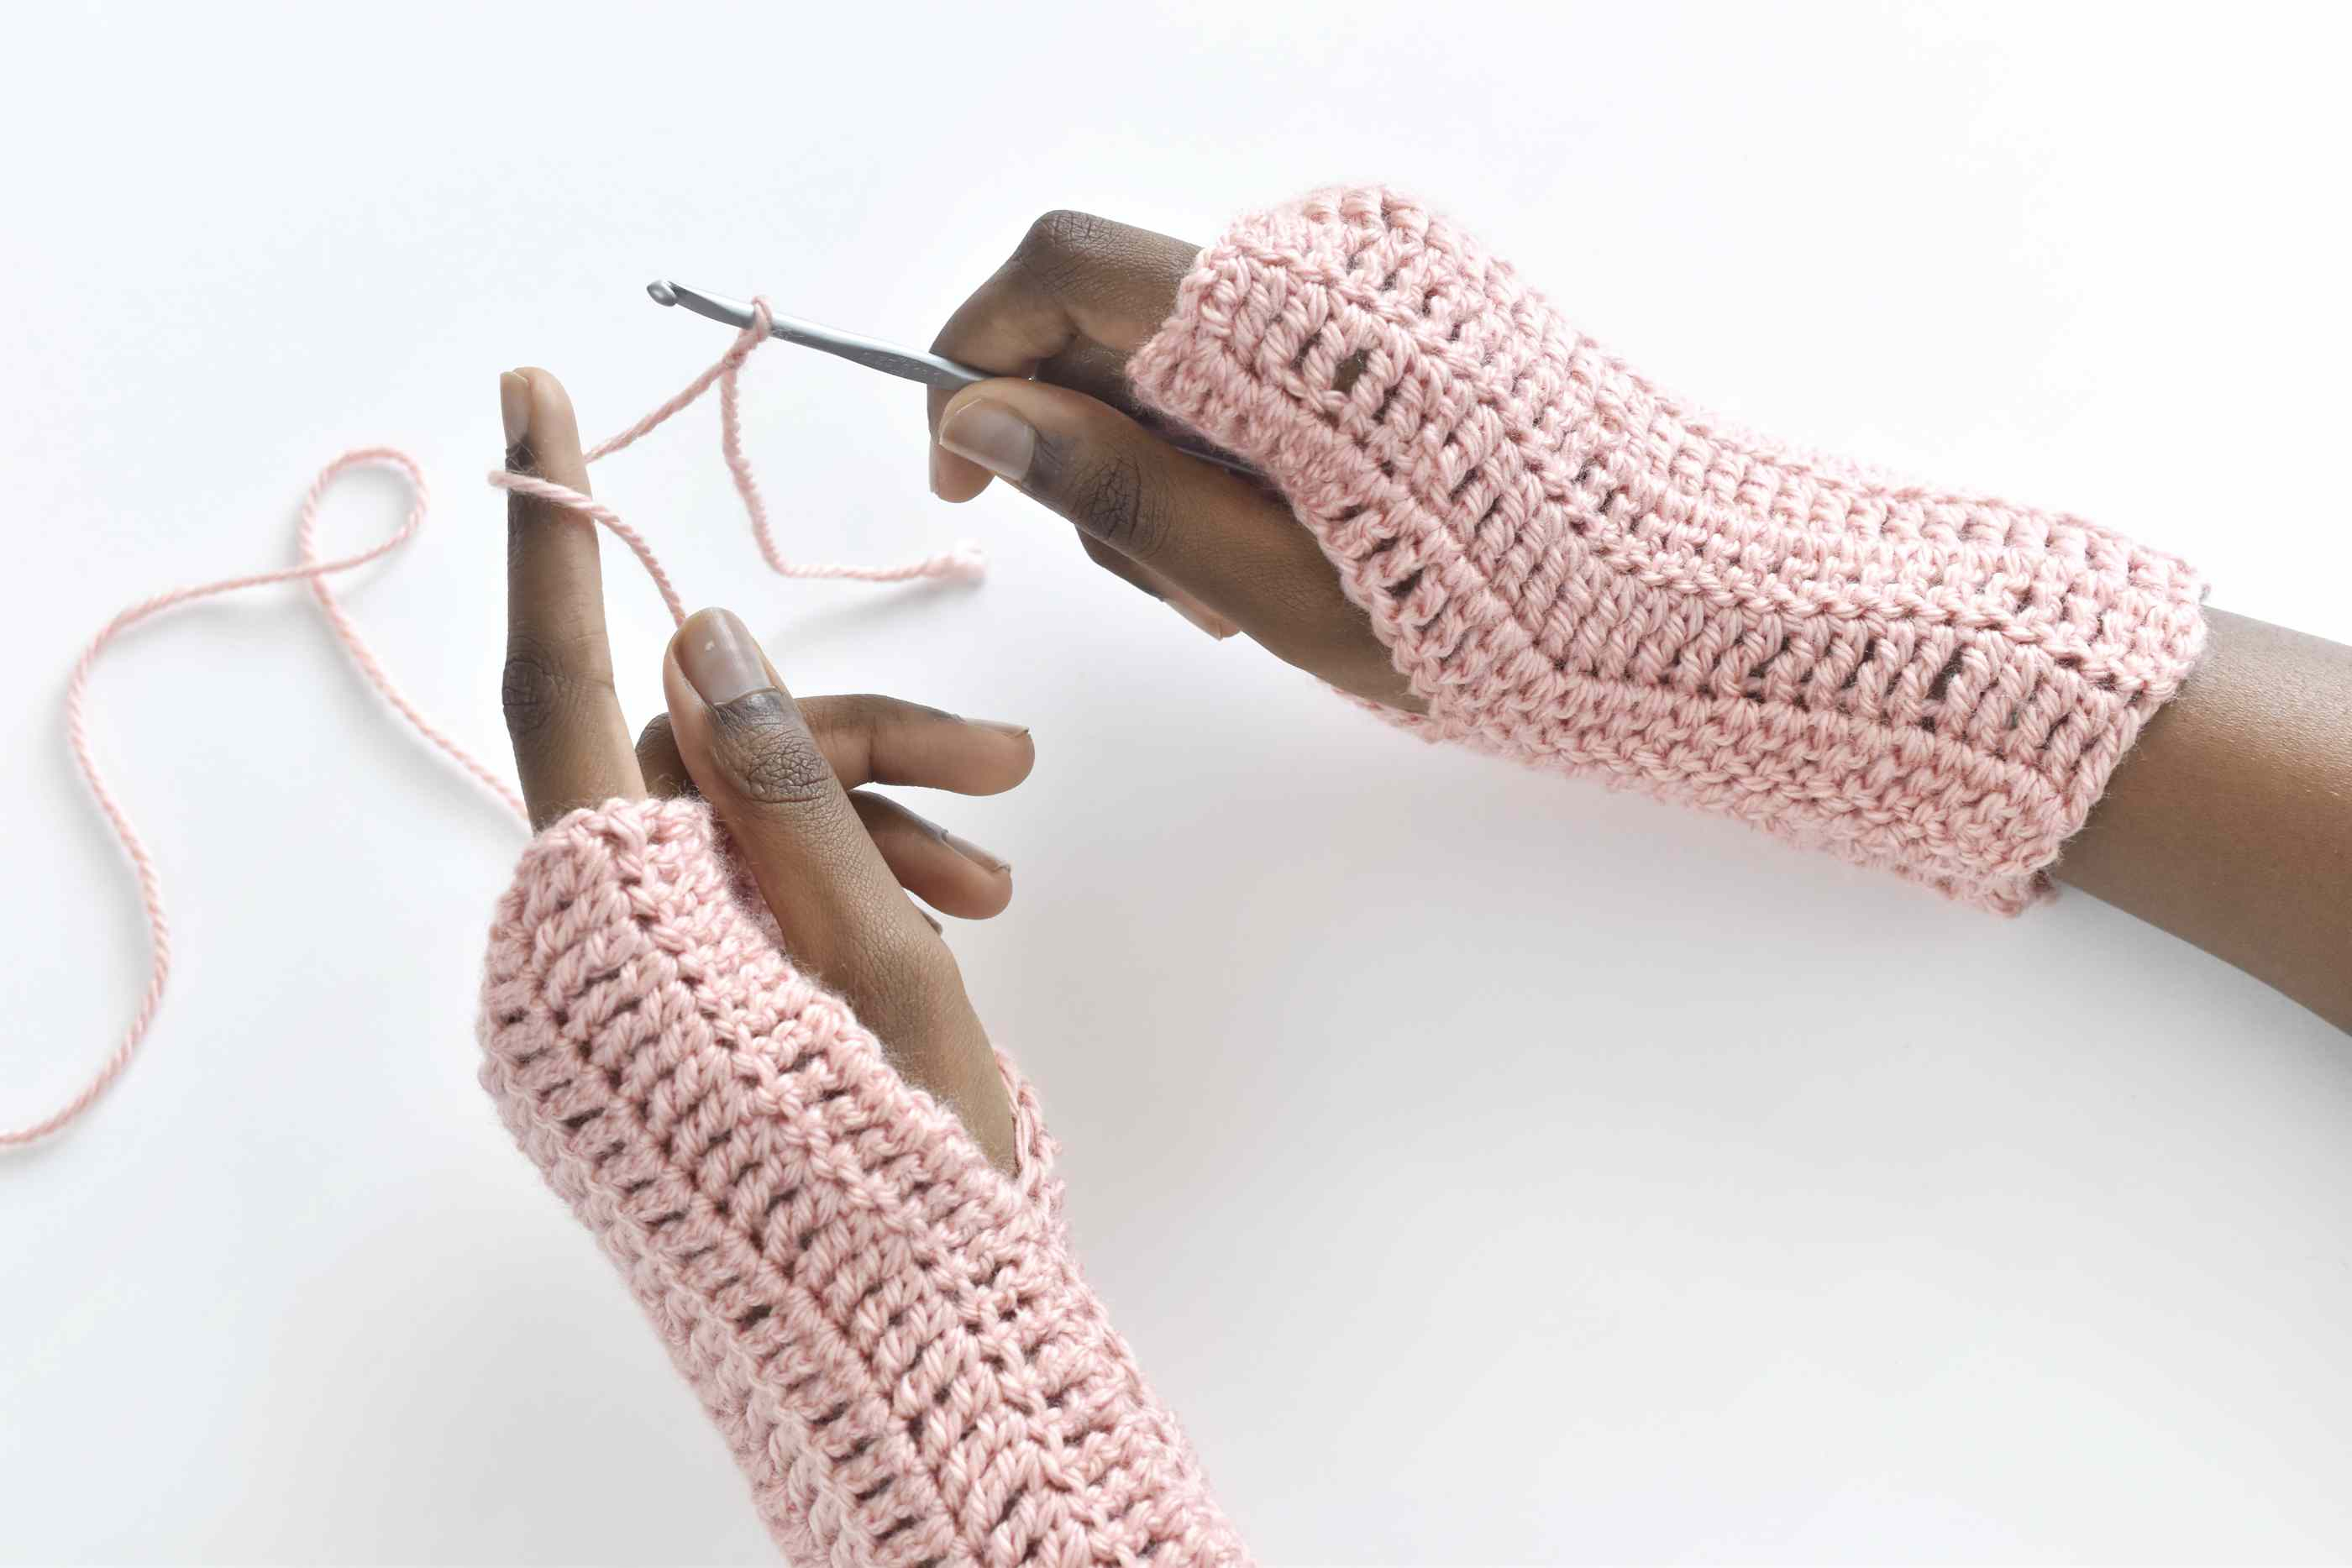 Crochet Wrist Warmers Free Pattern 10 Free Crochet Fingerless Gloves Patterns